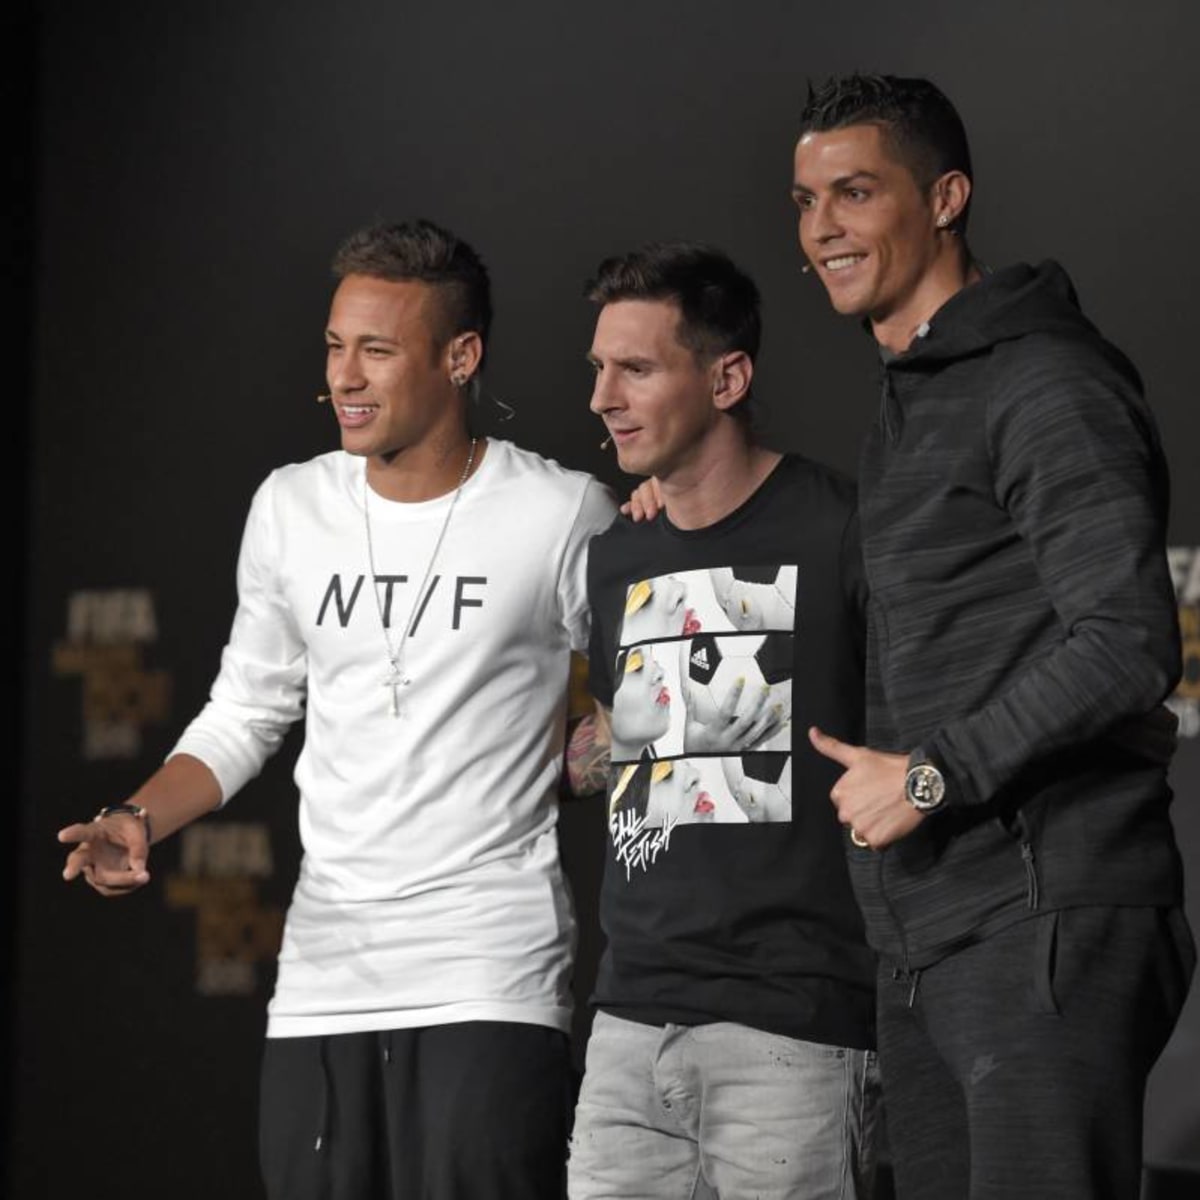 PSG not done yet - Will Ronaldo join Messi and Neymar next season